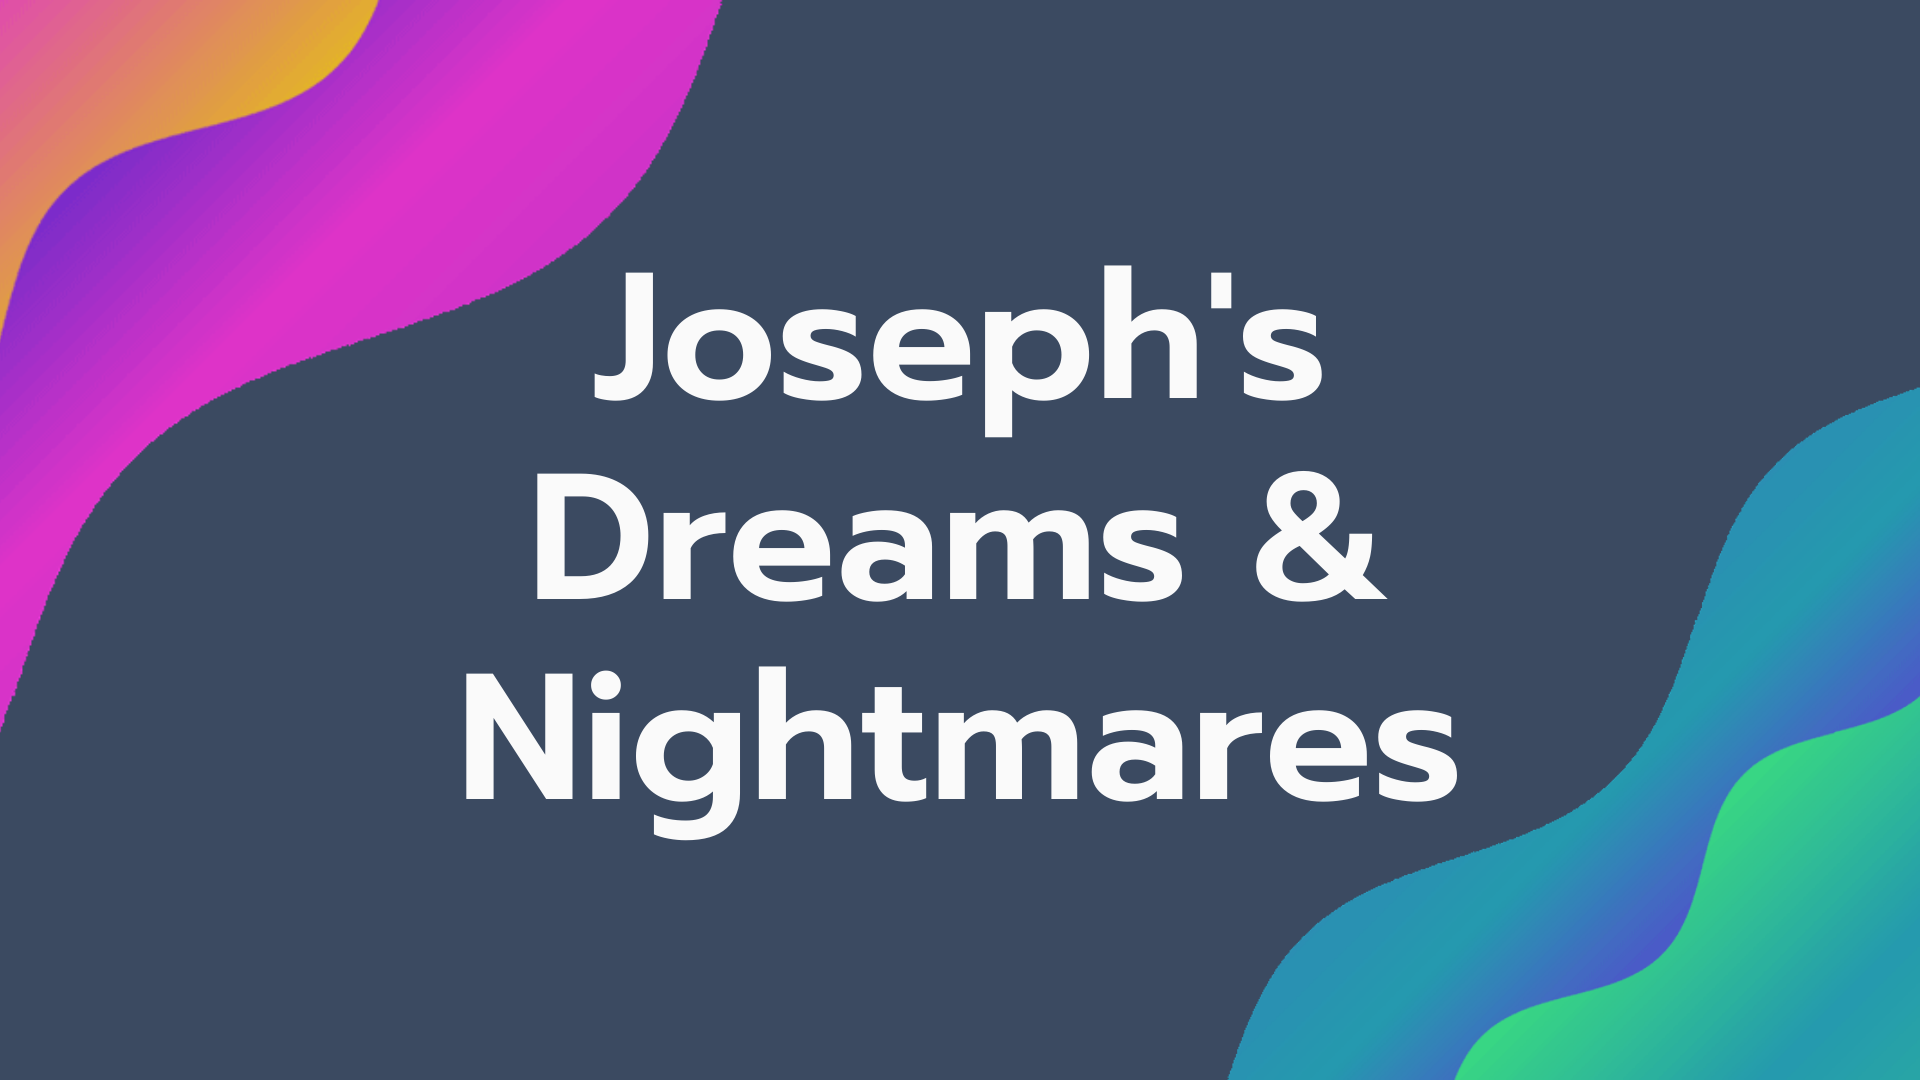 Joseph's Dreams & Nightmares